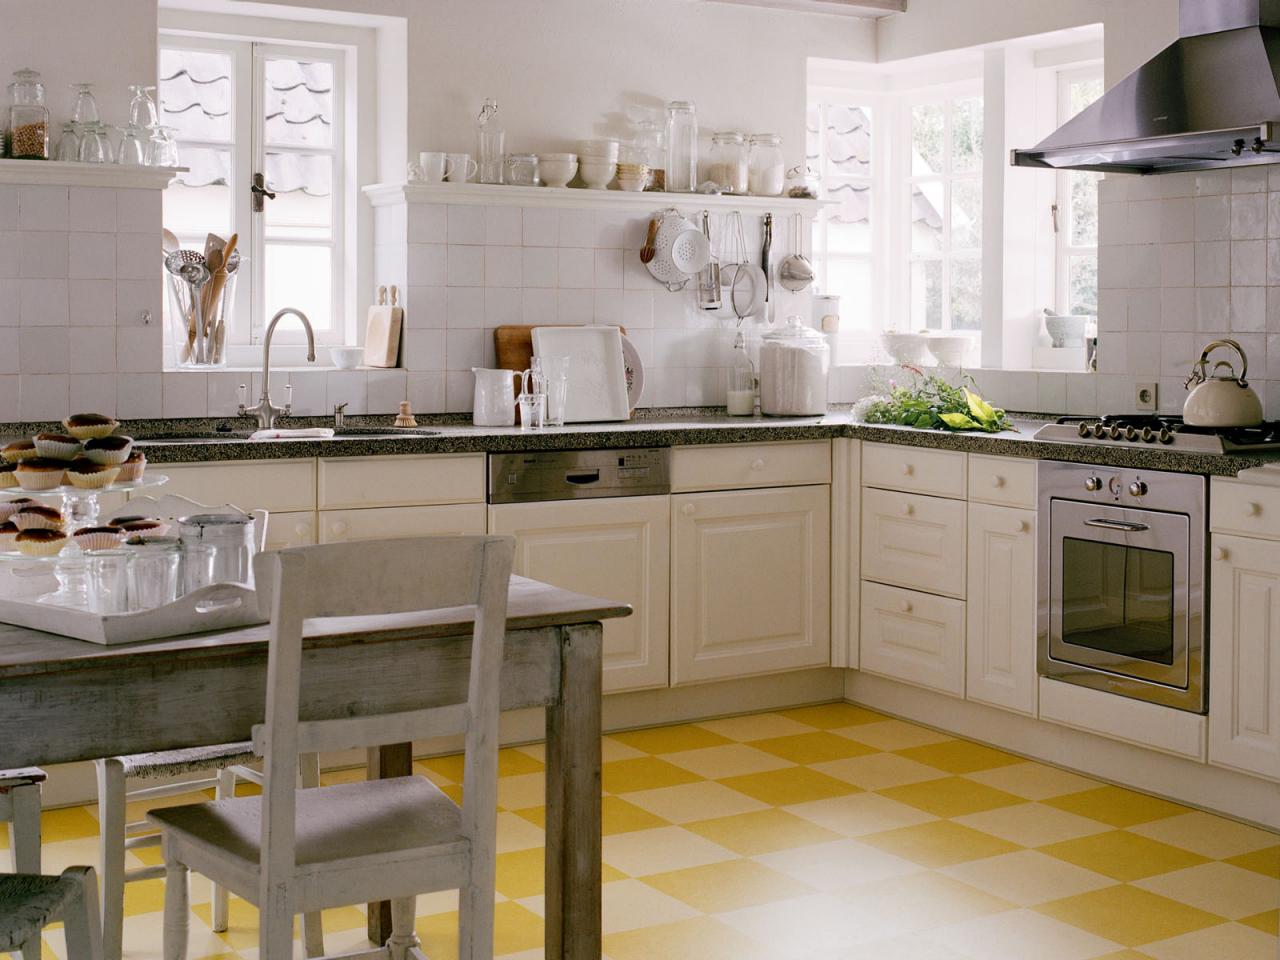 Linoleum Flooring in the Kitchen | HGTV